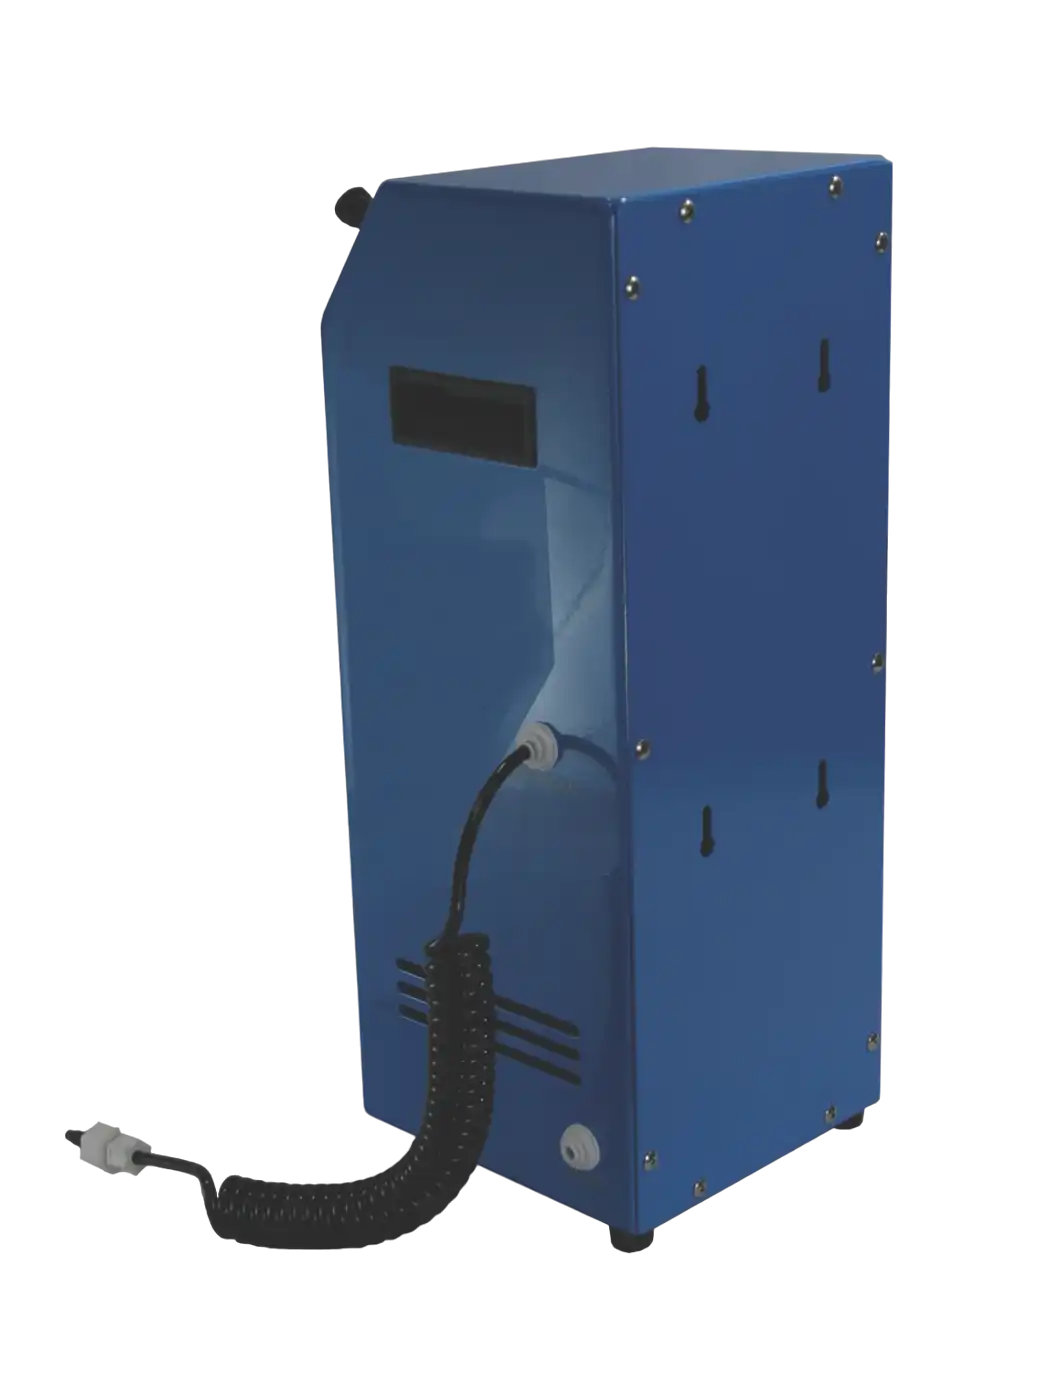 Nitrogen Generator, NITRO-GEN Series, Membrane-Based, 20 L/min, 95-99% Purity